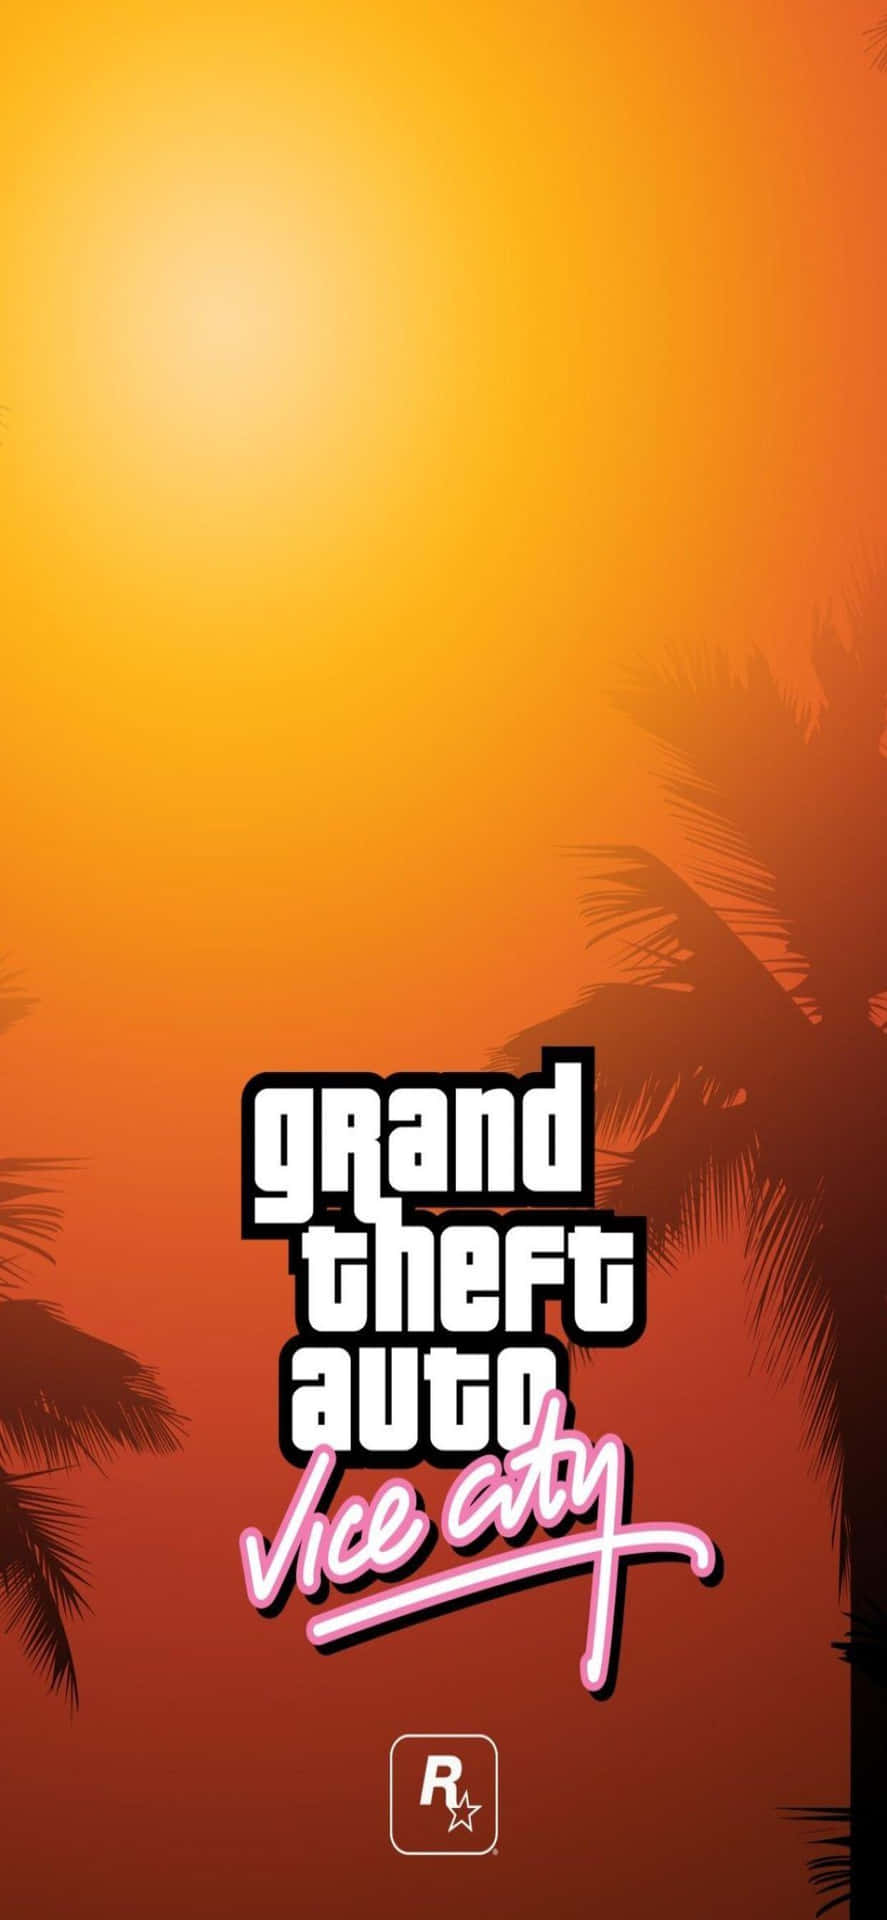 Viviun'avventura Virtuale Con Grand Theft Auto V Su Iphone Xs Max